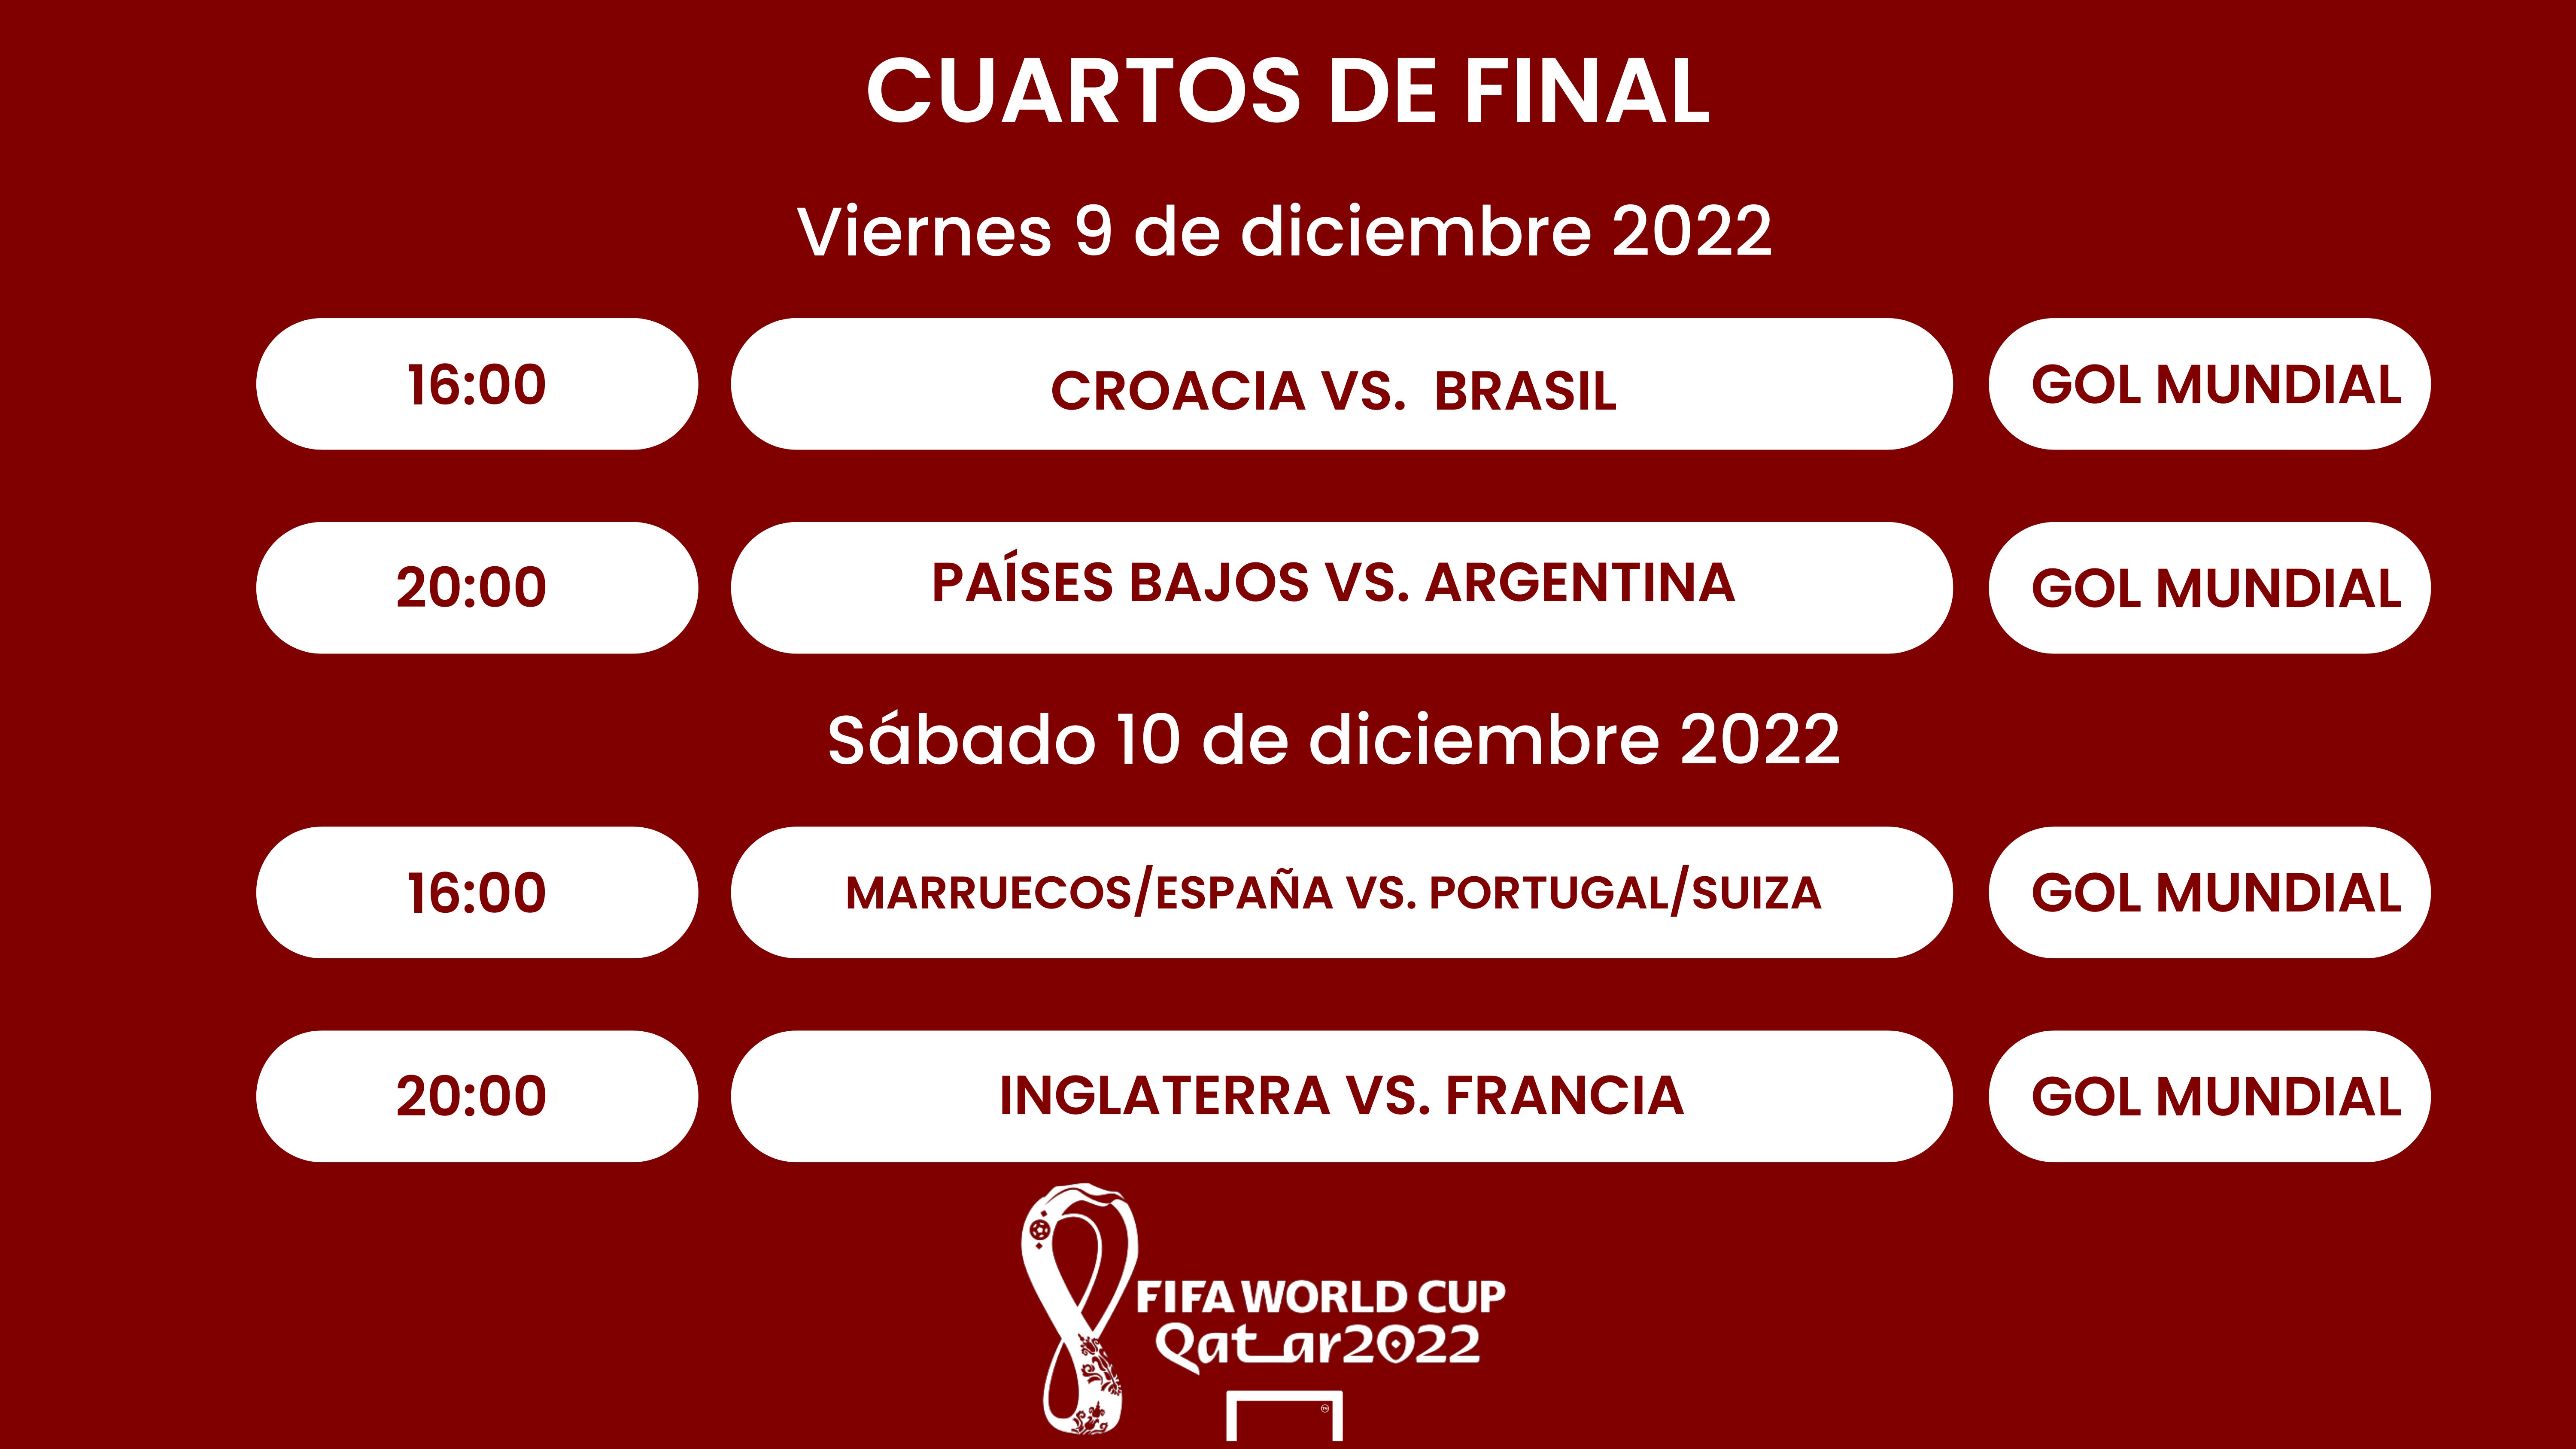 Abultar Oswald Prominente Cuartos de final del Mundial Qatar 2022: Cuándo son, selecciones  clasificadas, partidos, fechas, horarios y resultados | Goal.com Espana